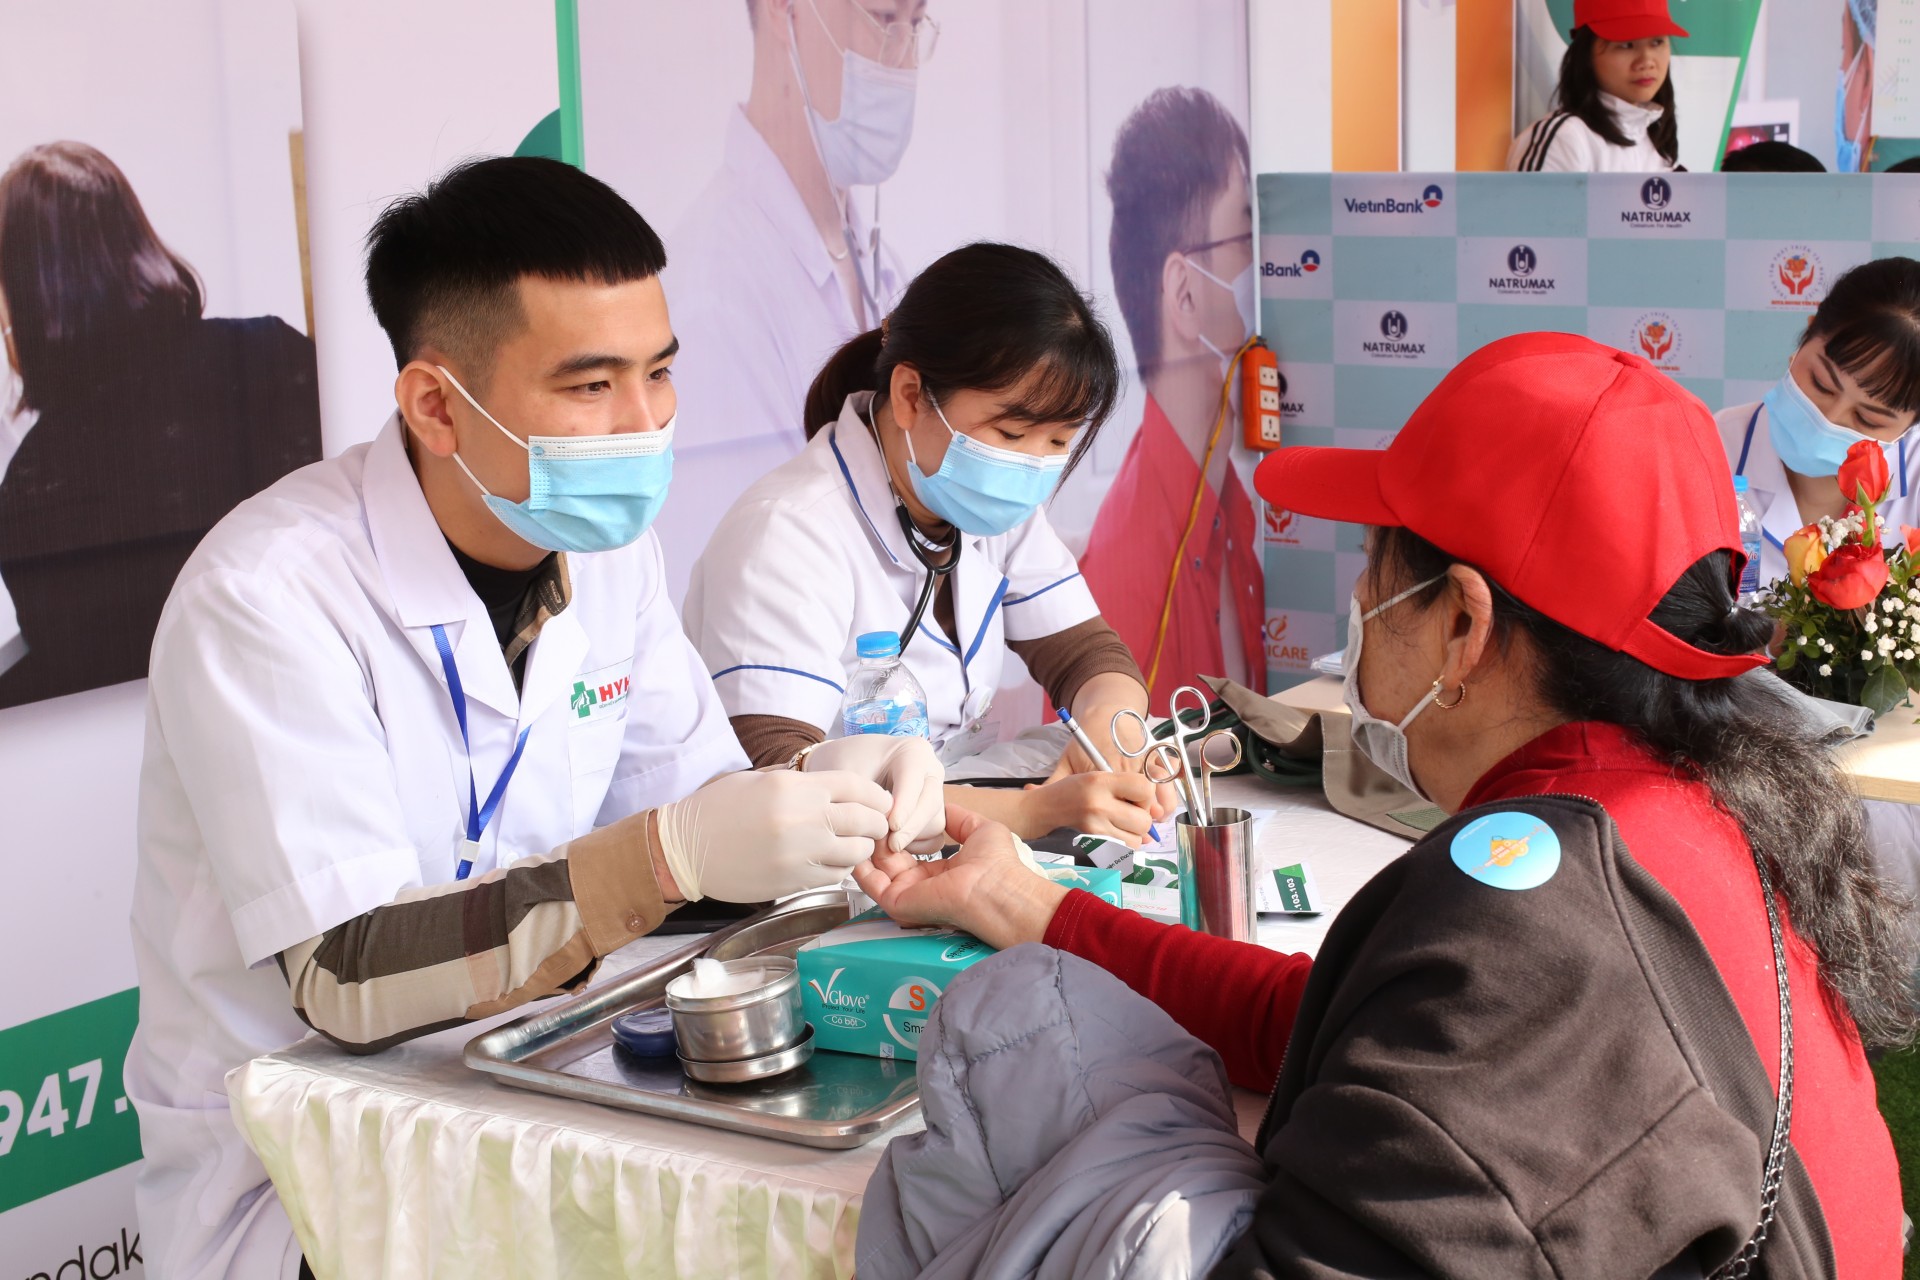 Hàng trăm người dân tỉnh Yên Bái được khám, sàng lọc sức khỏe miễn phí